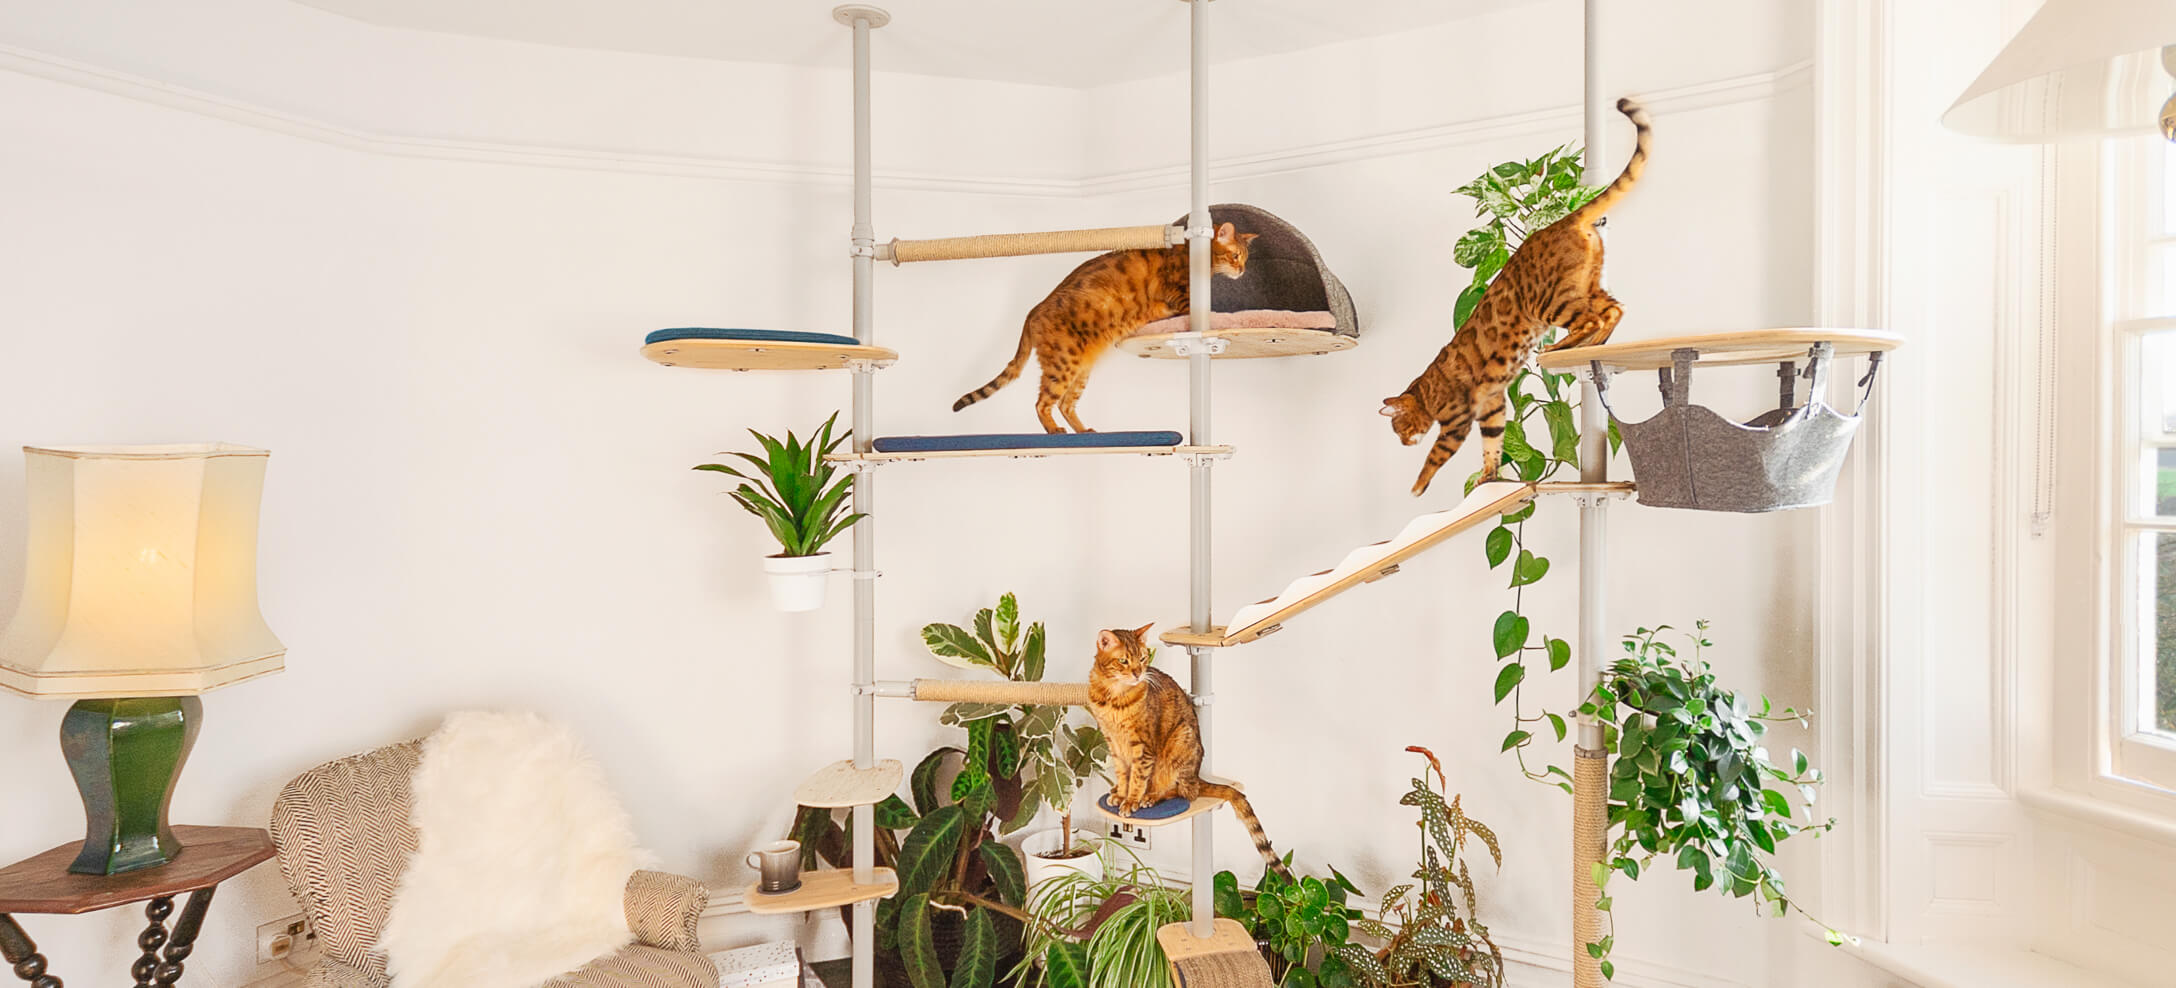 katten spelen op een indoor klimboom met allerlei accessoires